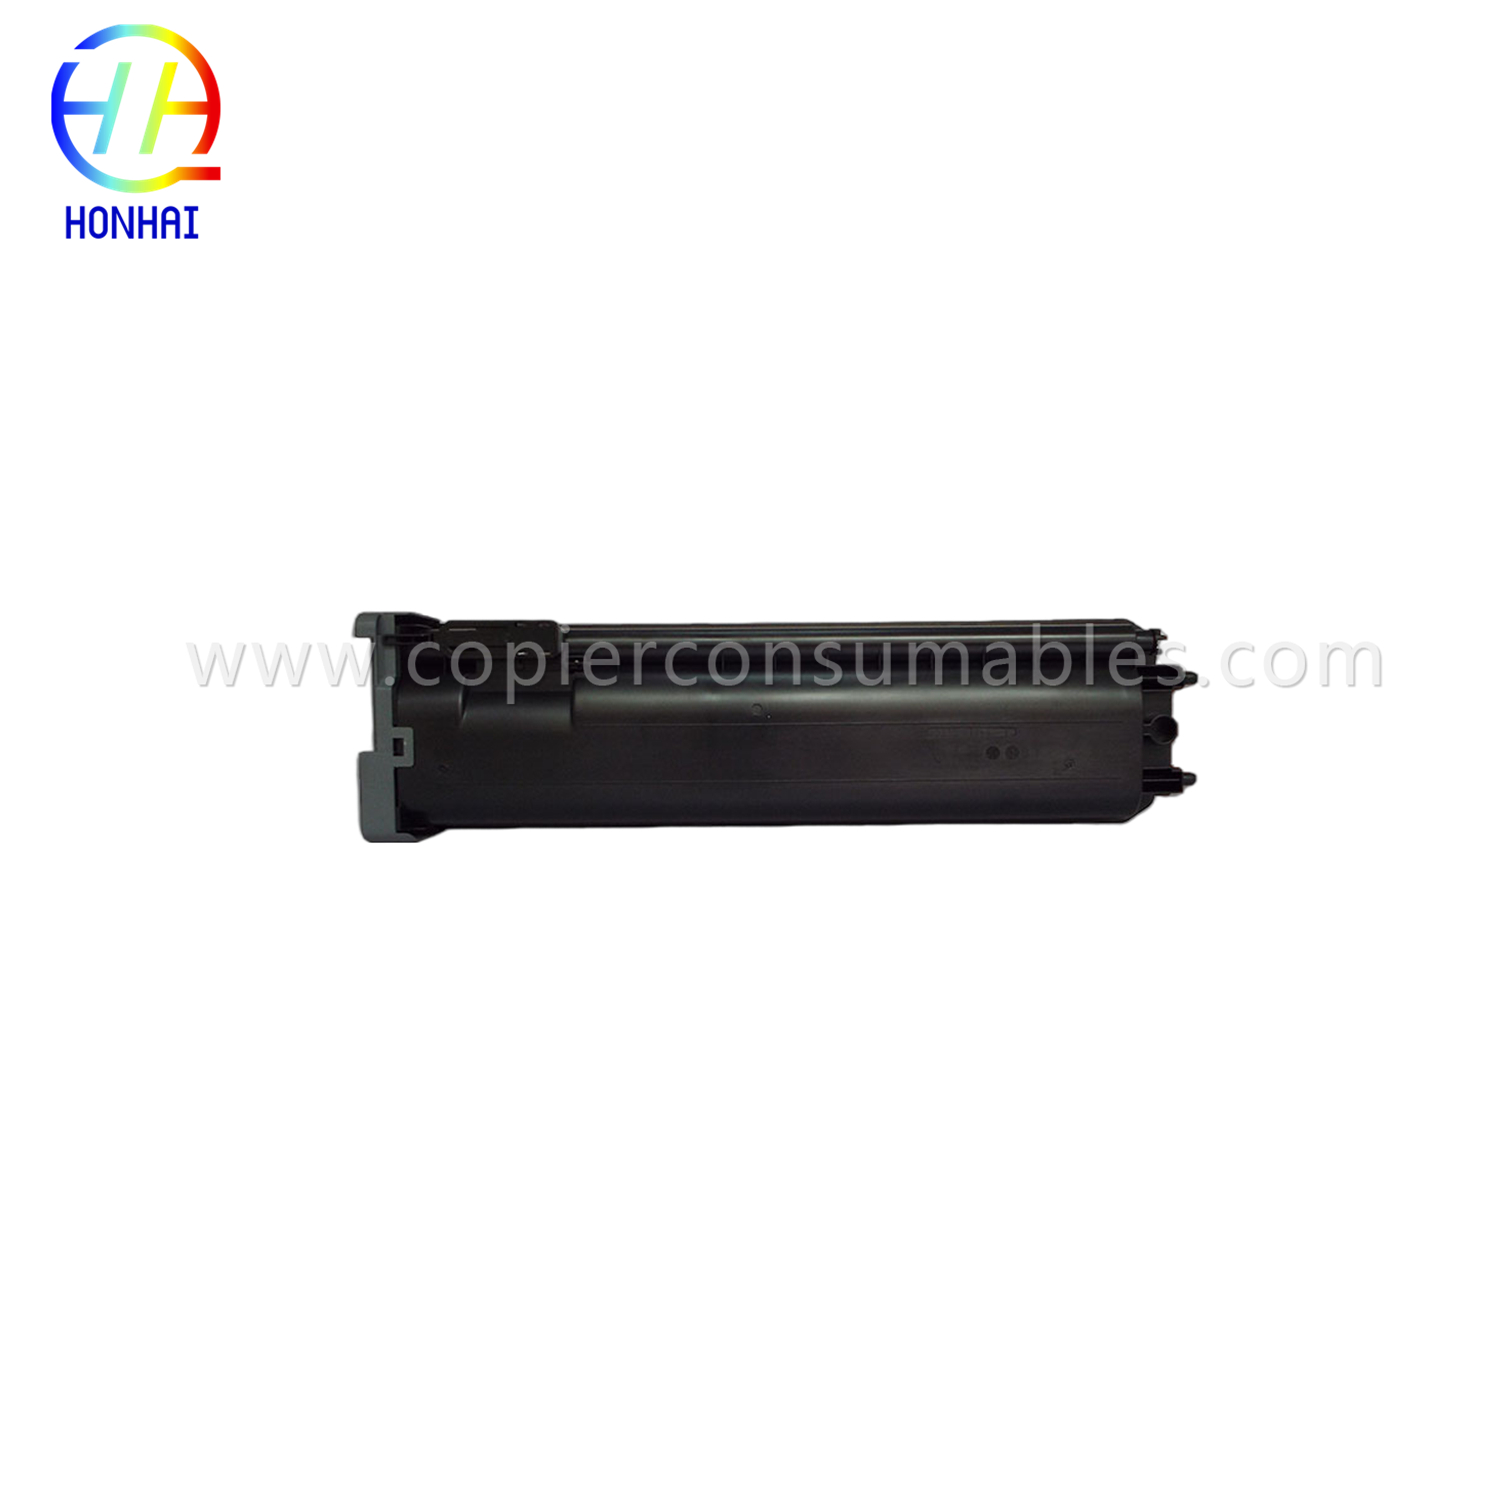 Black Toner Cartridge for Sharp Mx-M364 M464 M465 M564 M565 (MX-560GT)